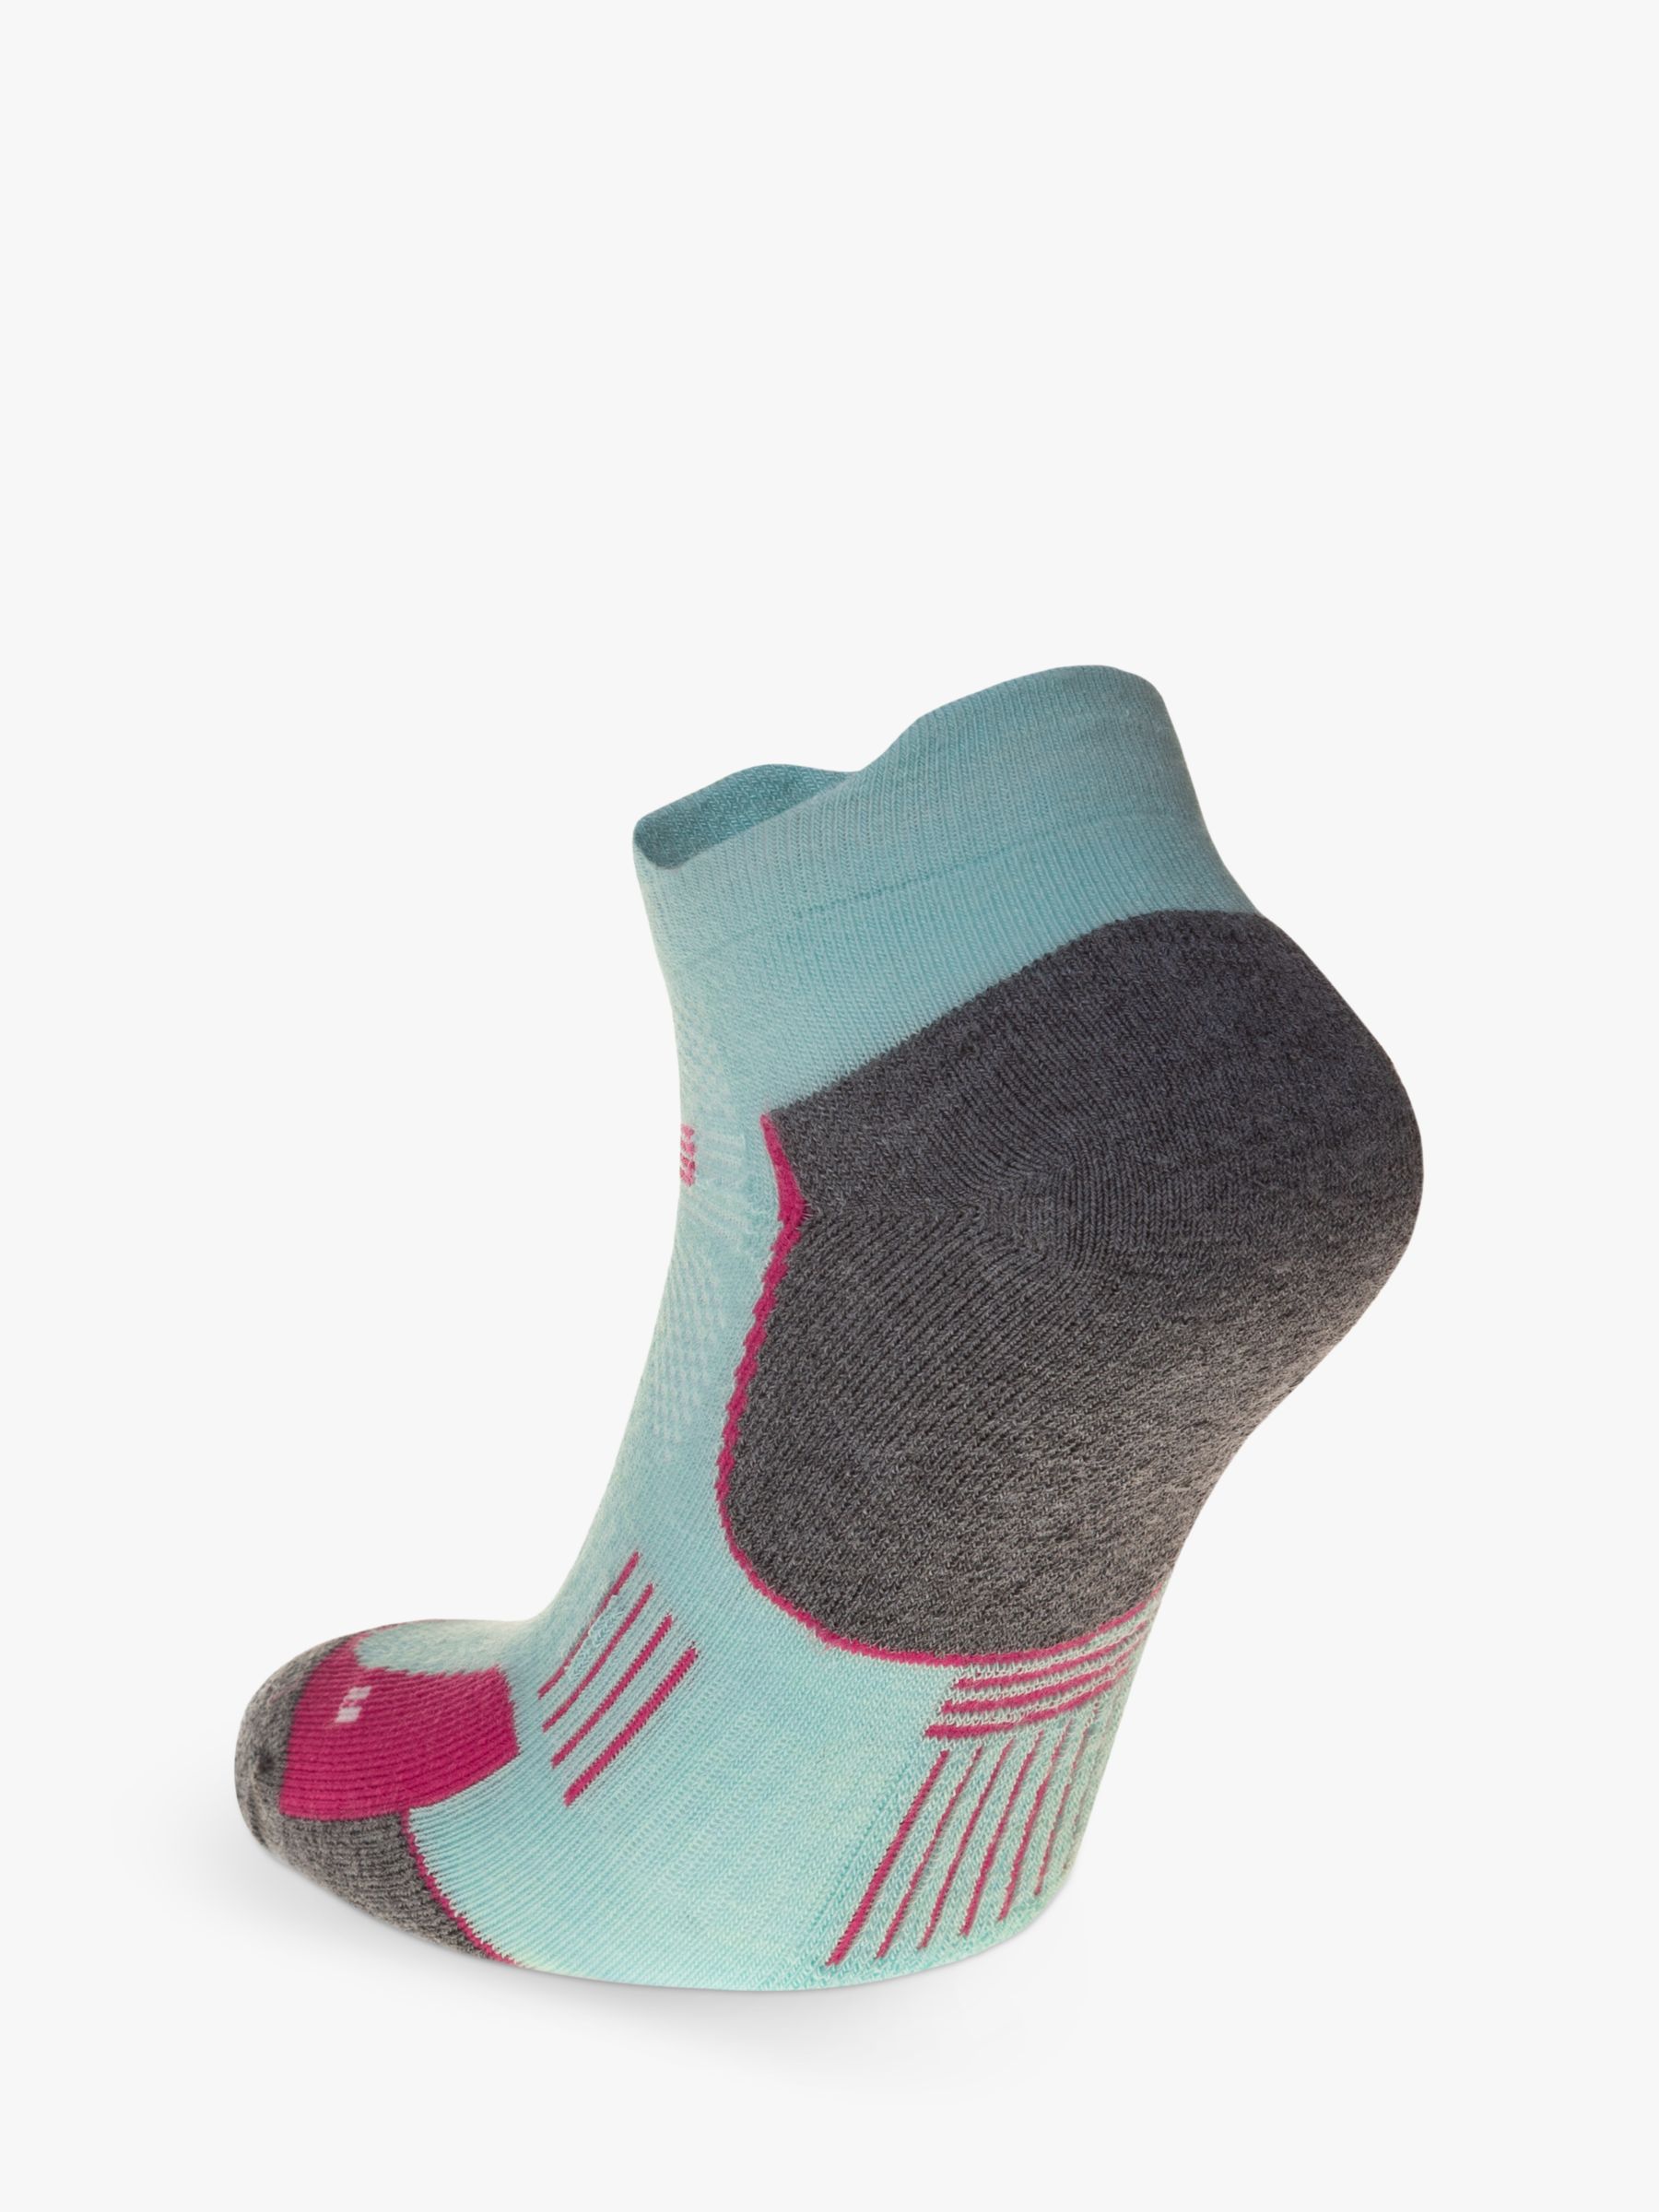 Buy Falke Running socks online